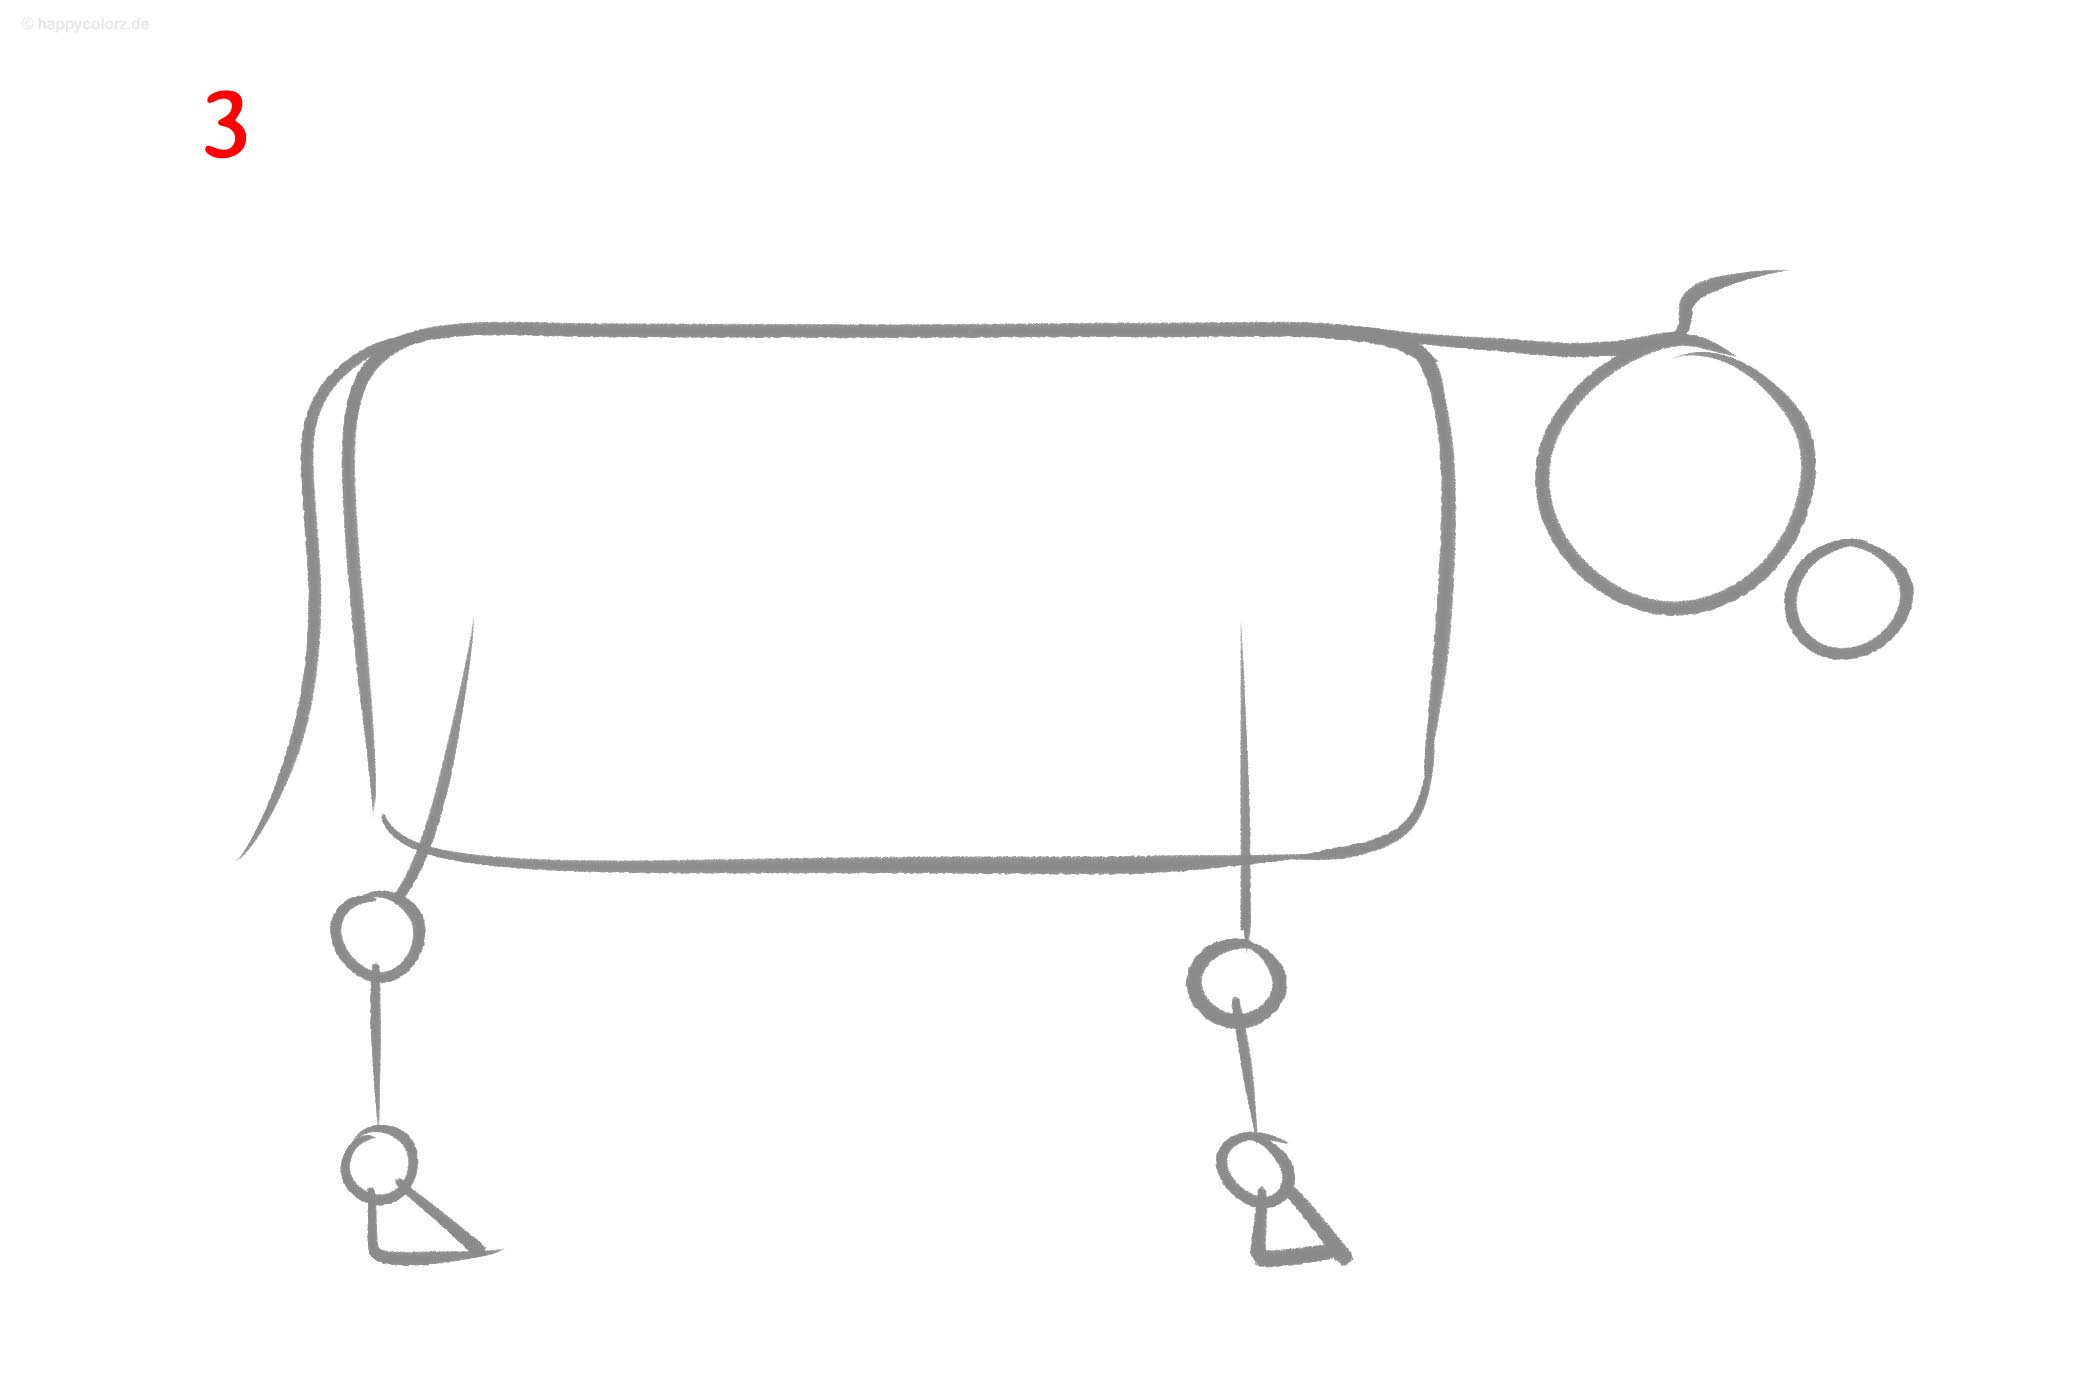 Kuh zeichnen - Anleitung